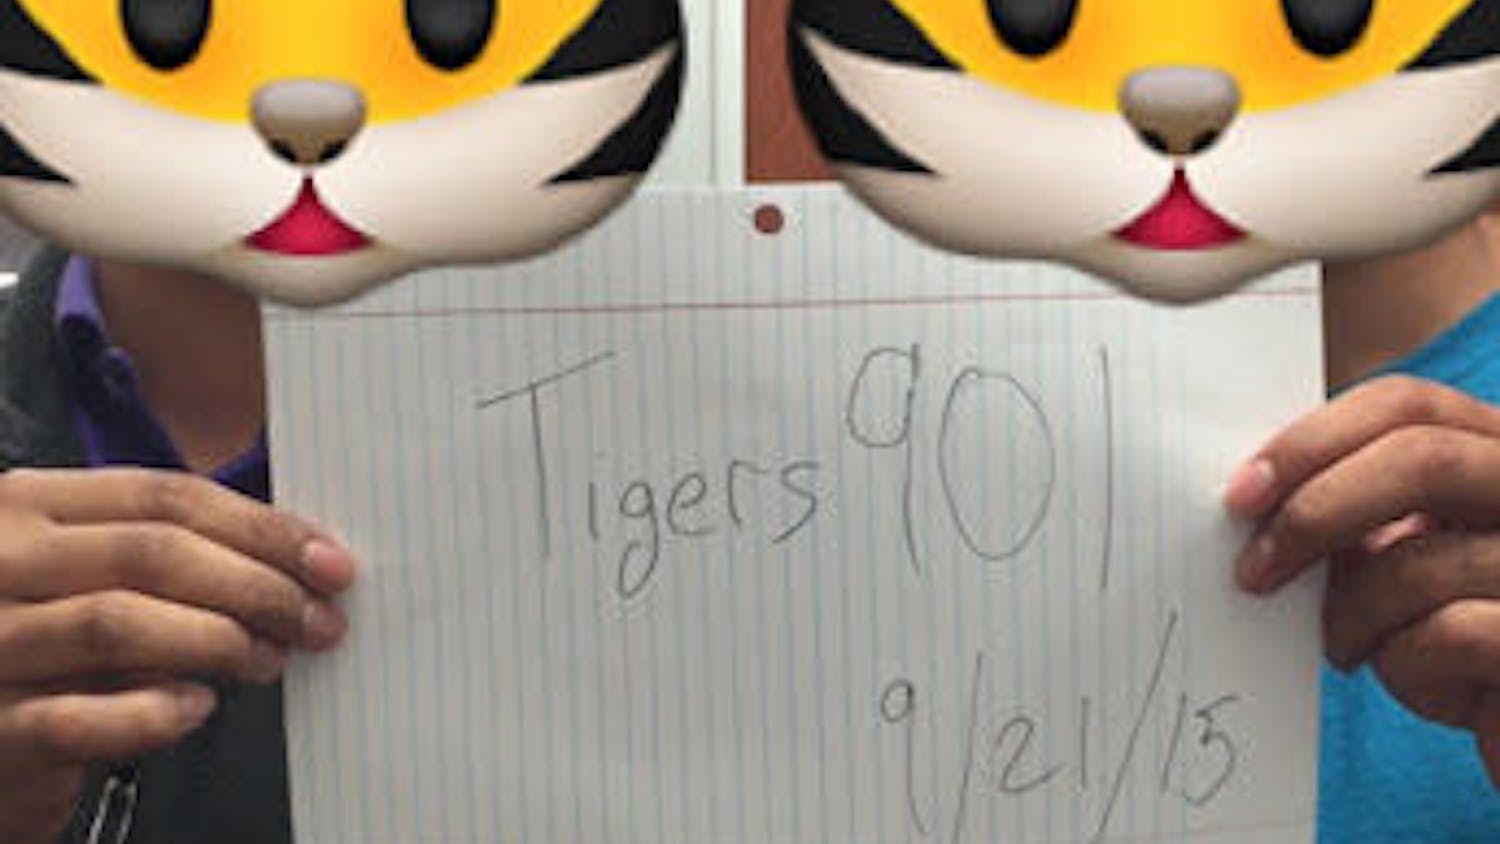 Tigers901